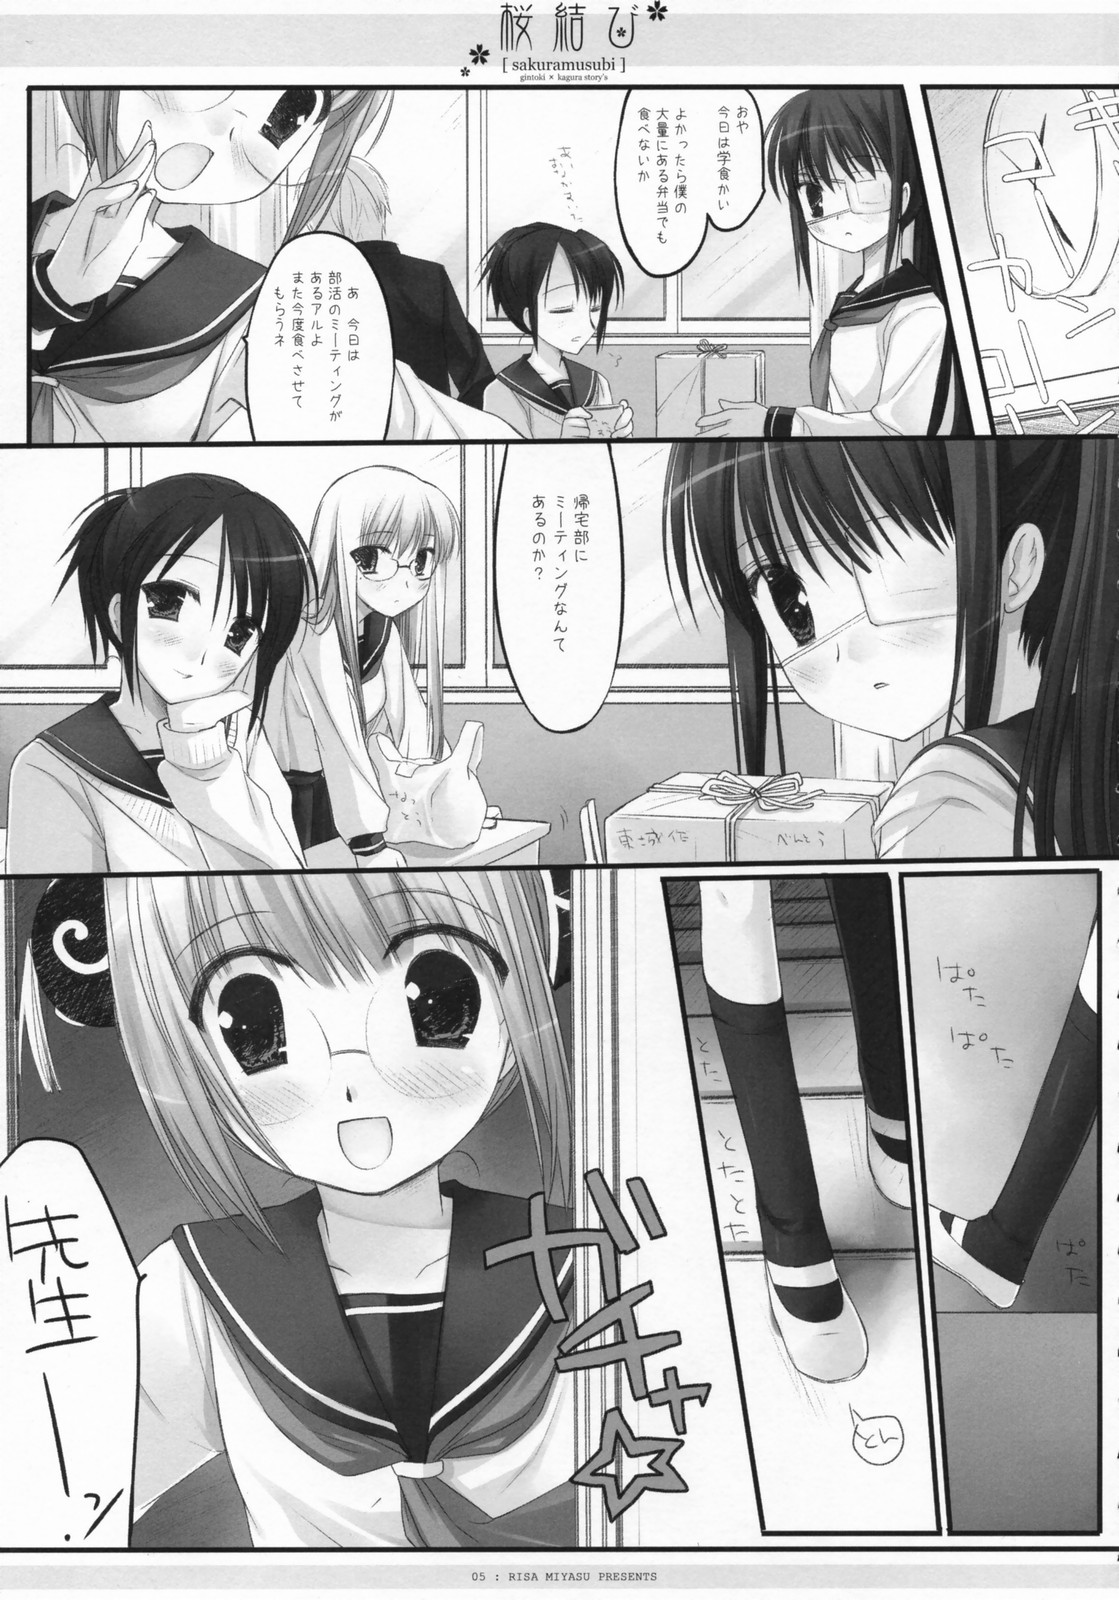 (COMIC1) [CHRONOLOG, D.N.A.Lab., ICHIGOSIZE (Miyasu Risa, Natsume Eri, Sakurazawa Izumi)] Sakuramusubi (Gintama) page 6 full